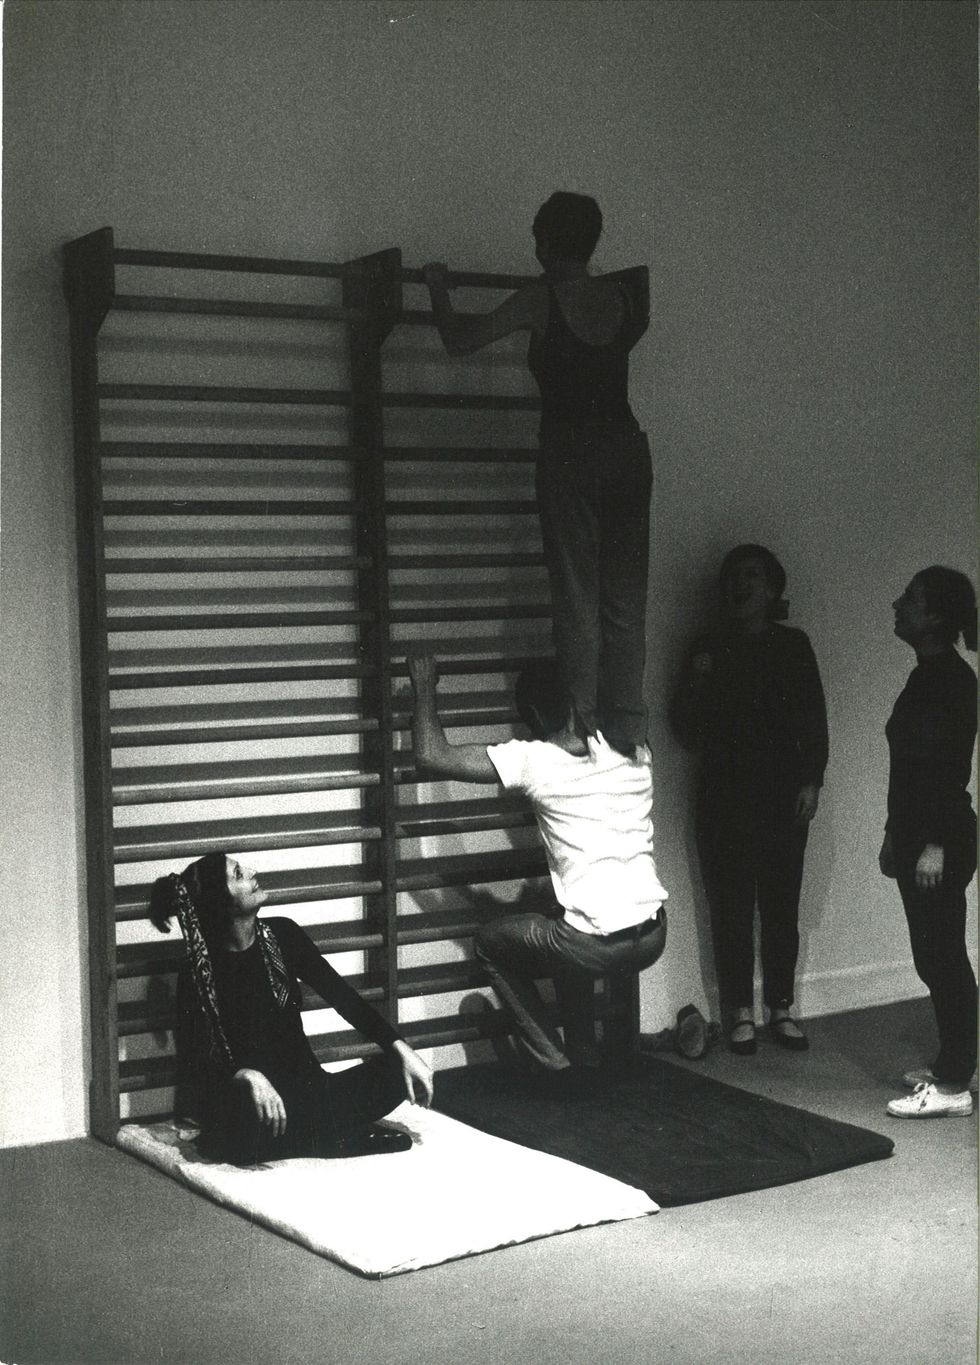 anna paparatti, performance ginnastica mentale, galleria l'attico, 1968